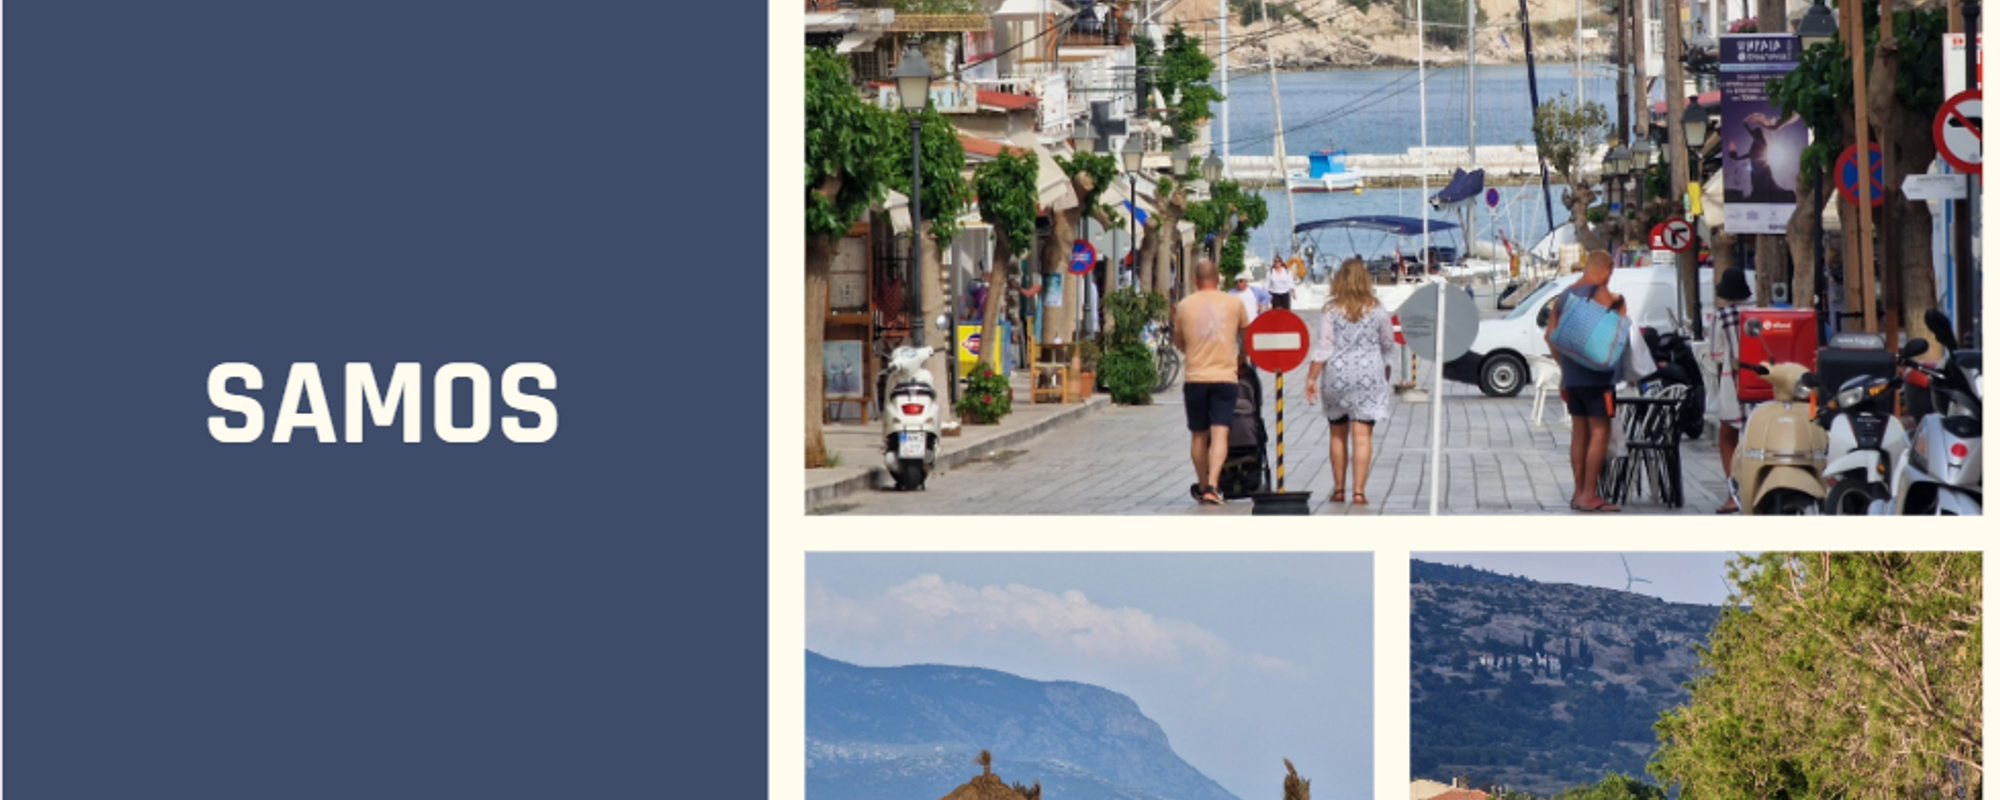 [PL / ENG] Samos: nasze pierwsze greckie wakacje / Samos: our first Greeg vacation